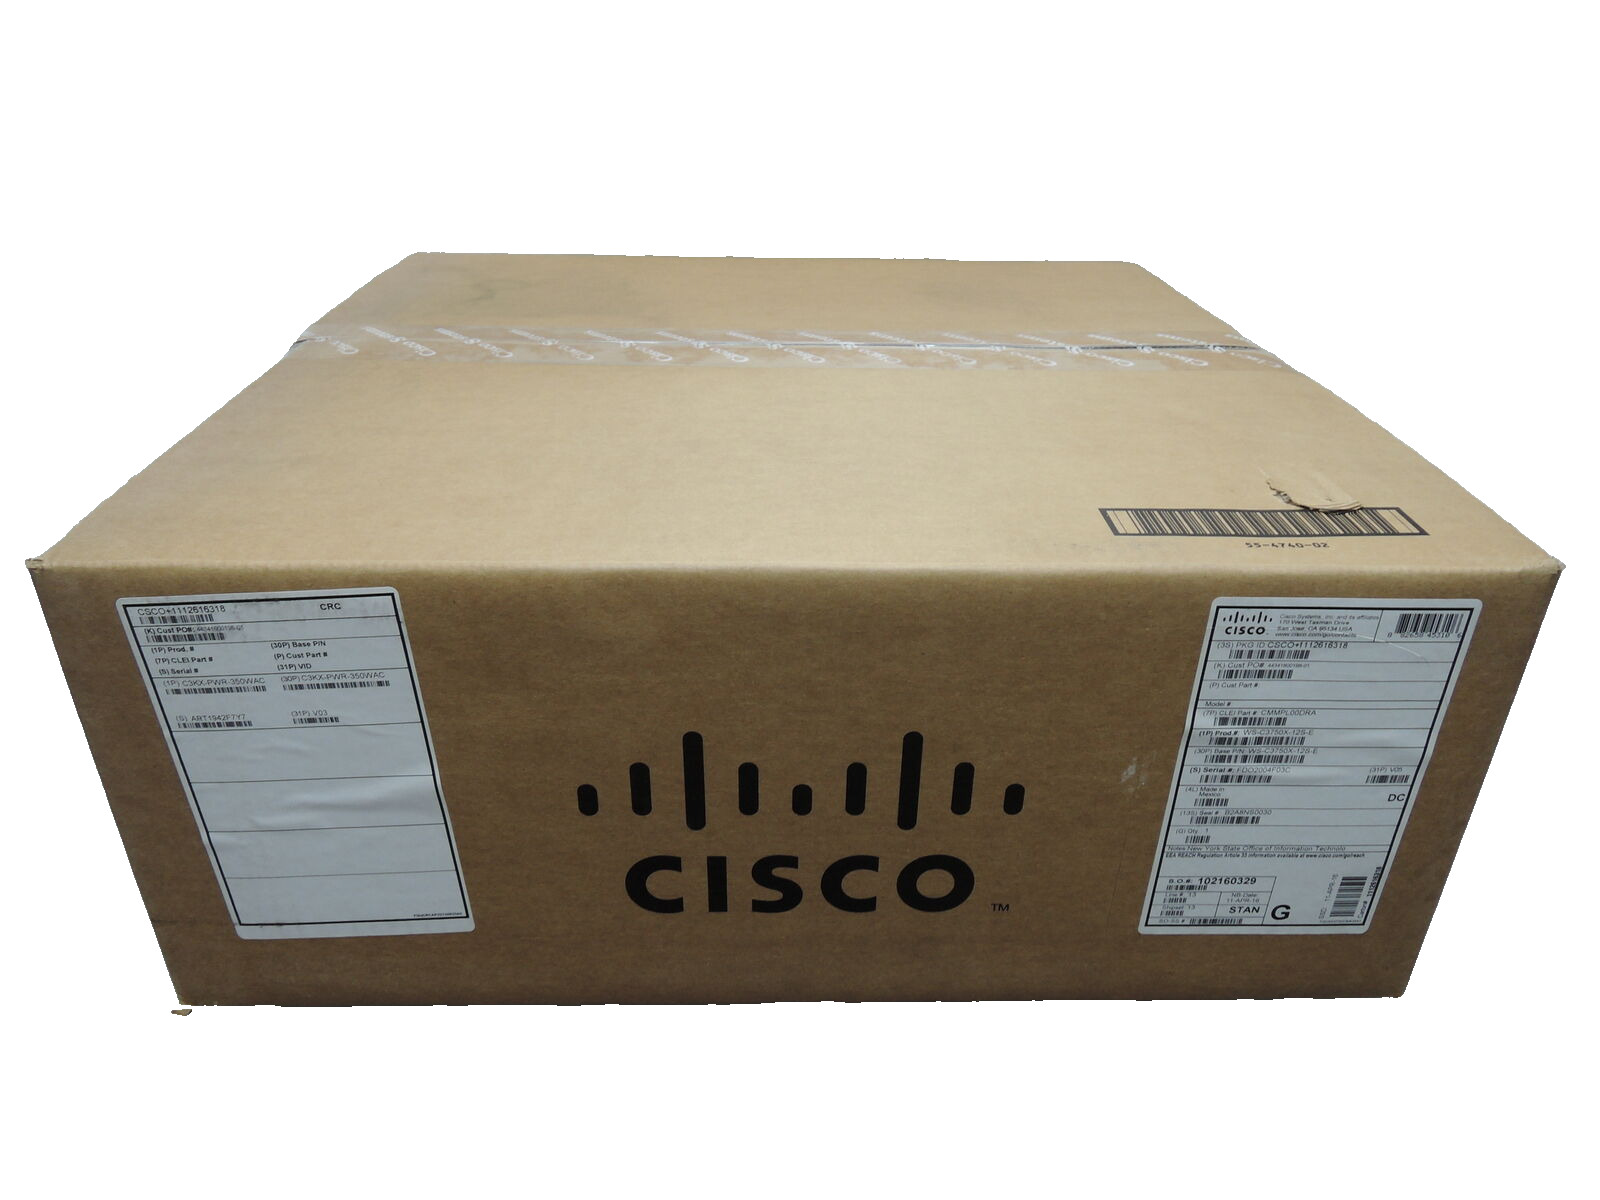 NEW Cisco WS-C3750X-12S-S  E btr than S 3750X 12 port GIG SFP switch. 1 yr wanty